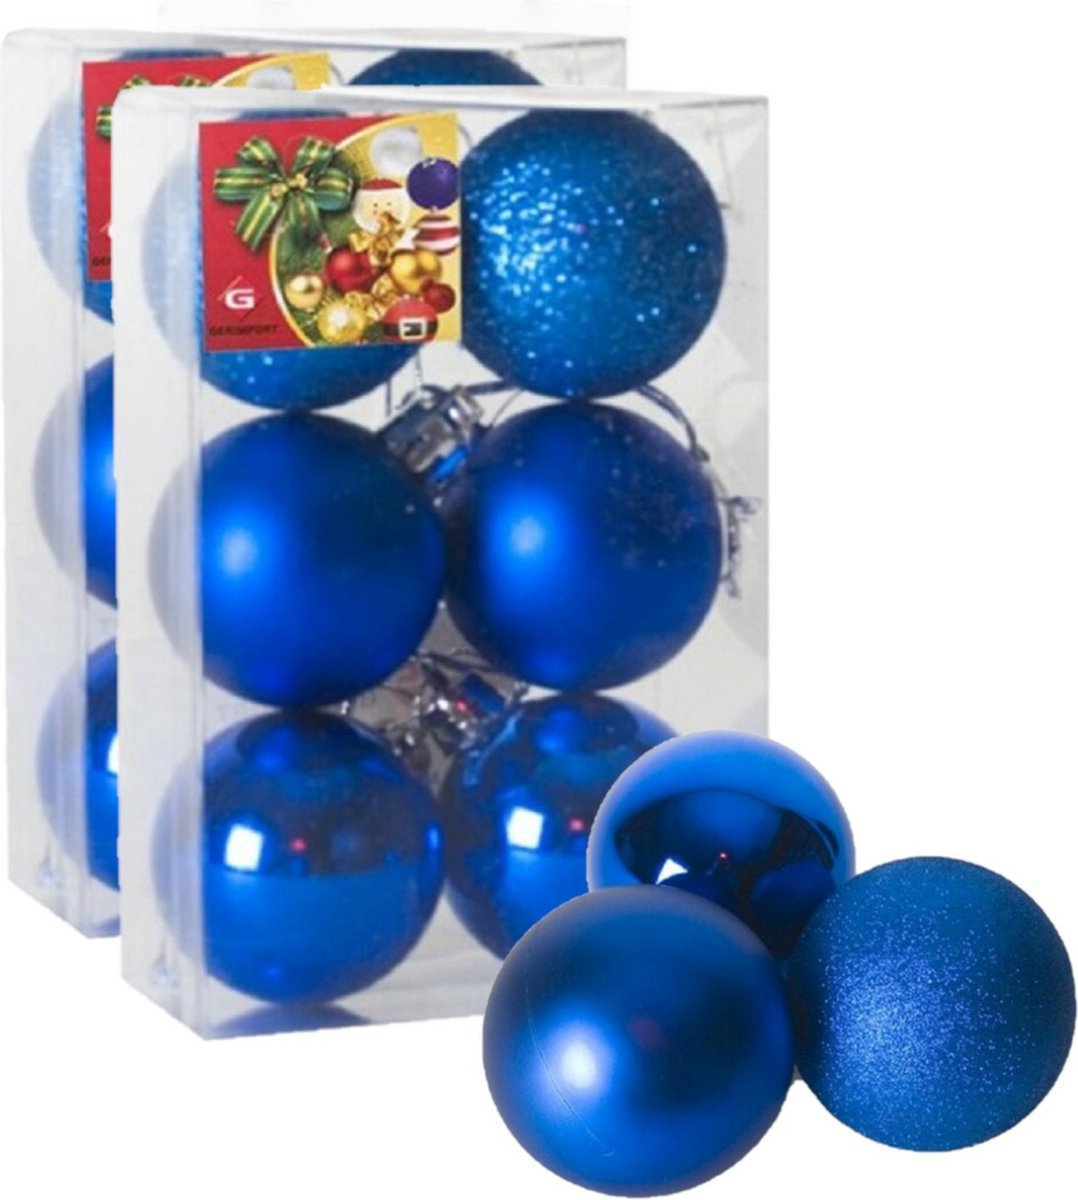 12x stuks kerstballen blauw mix van mat/glans/glitter kunststof diameter 4 cm - Kerstboom versiering